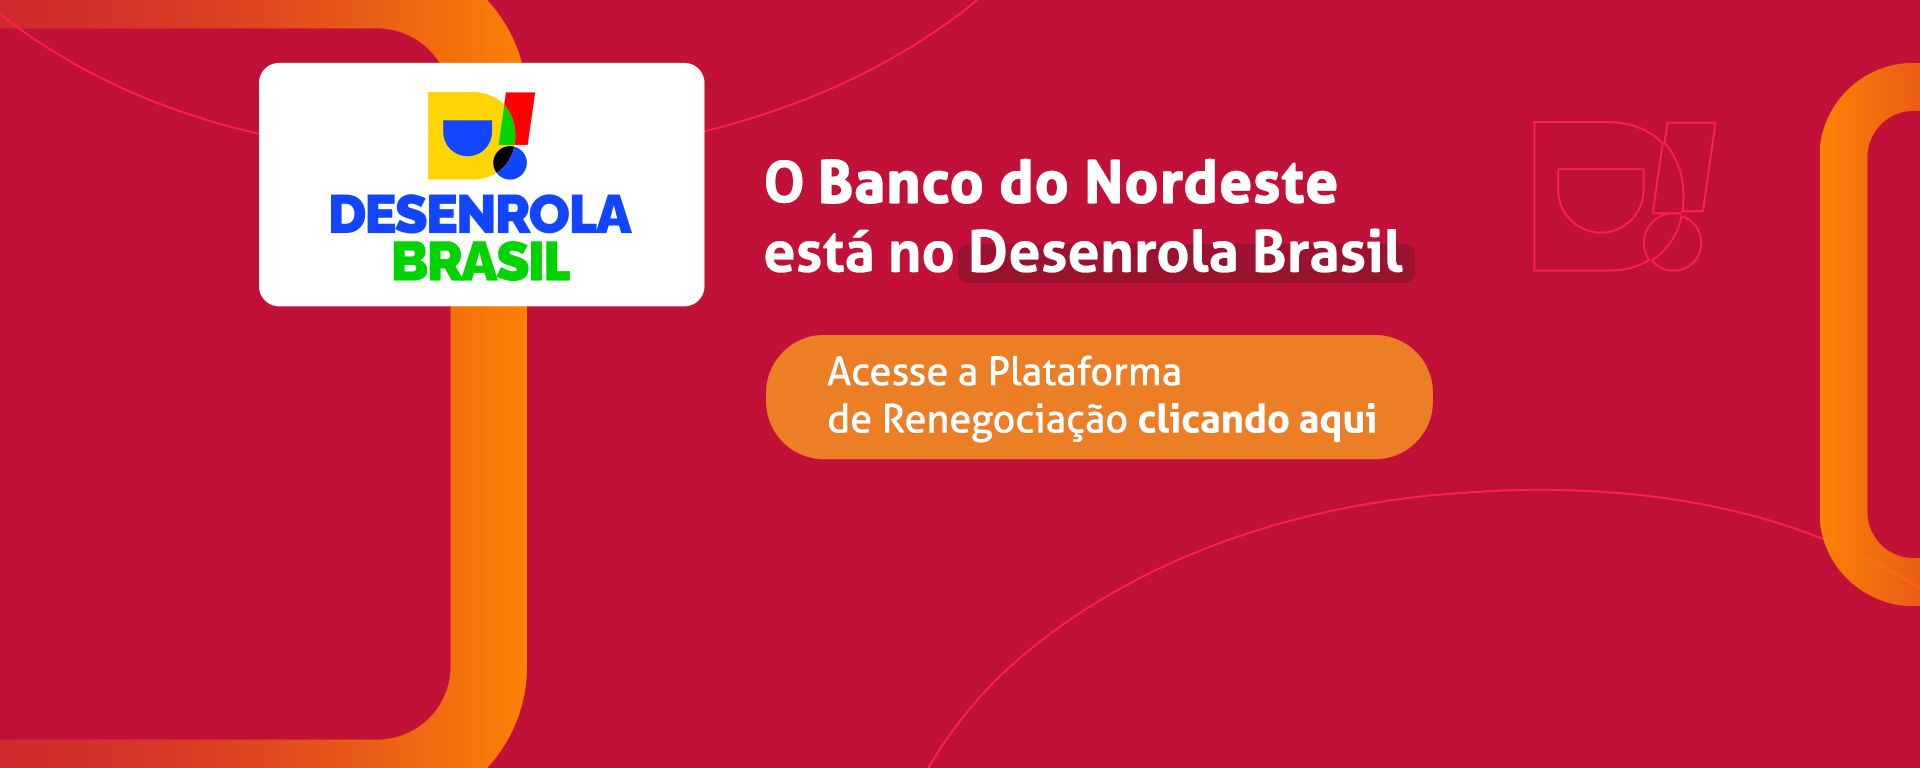 O Banco do Nordeste está no Desenrola Brasil - Clique aqui e acesse a plataforma de renegociação.